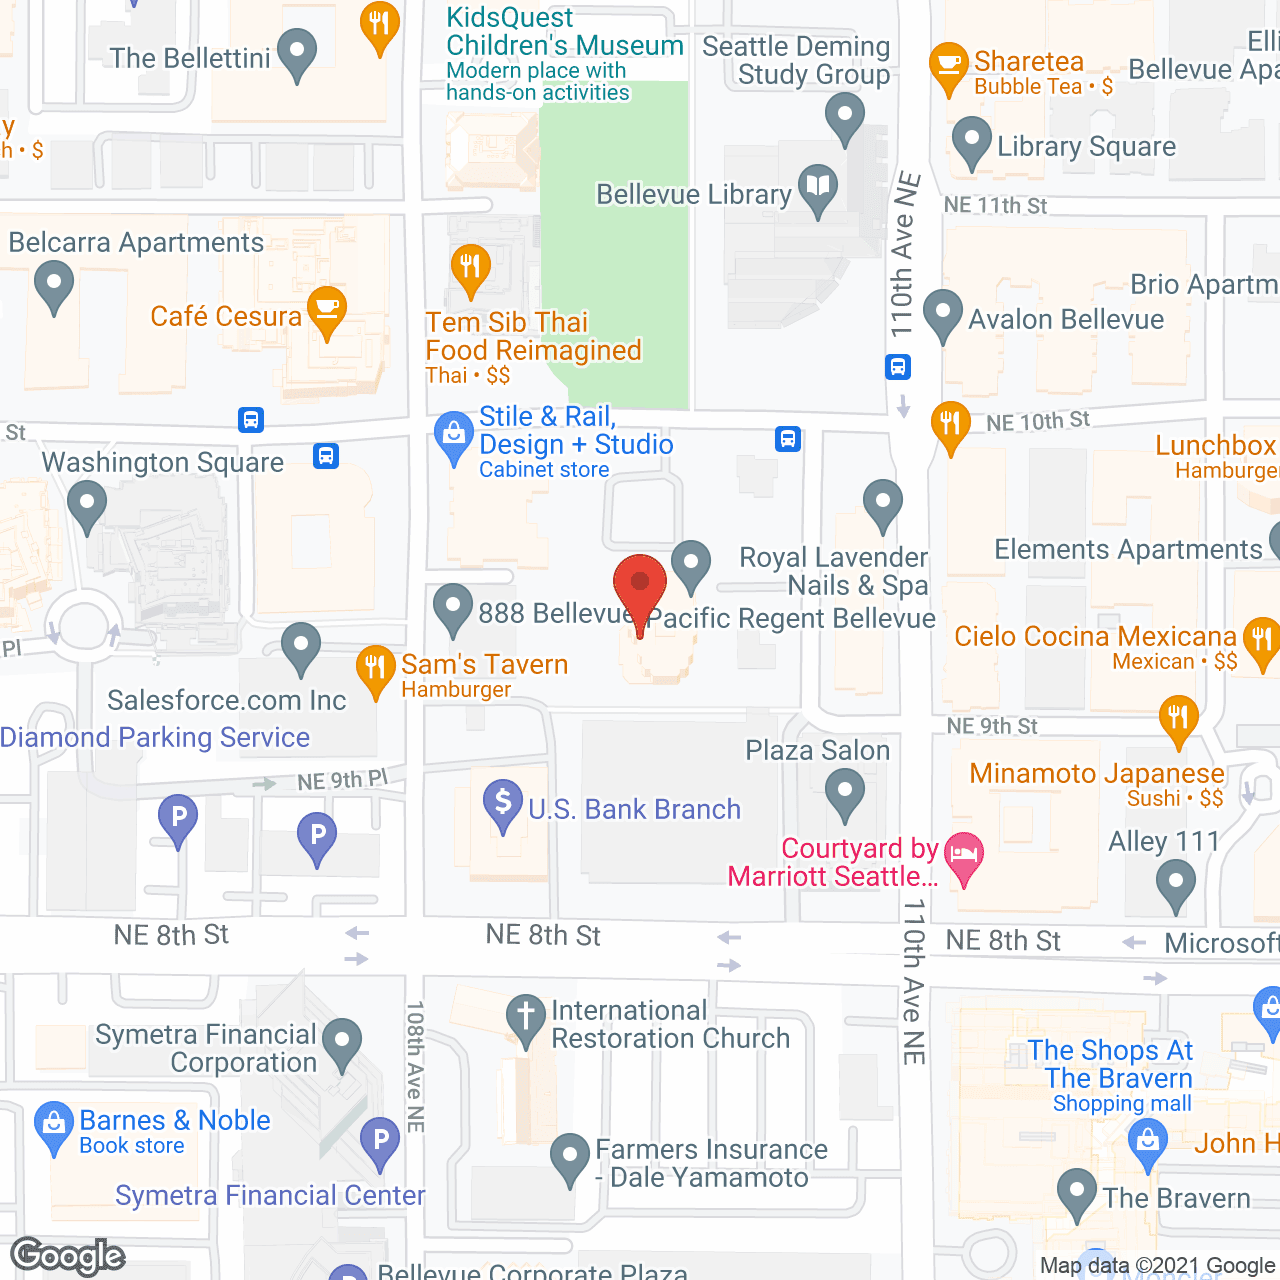 Pacific Regent Bellevue by Cogir in google map